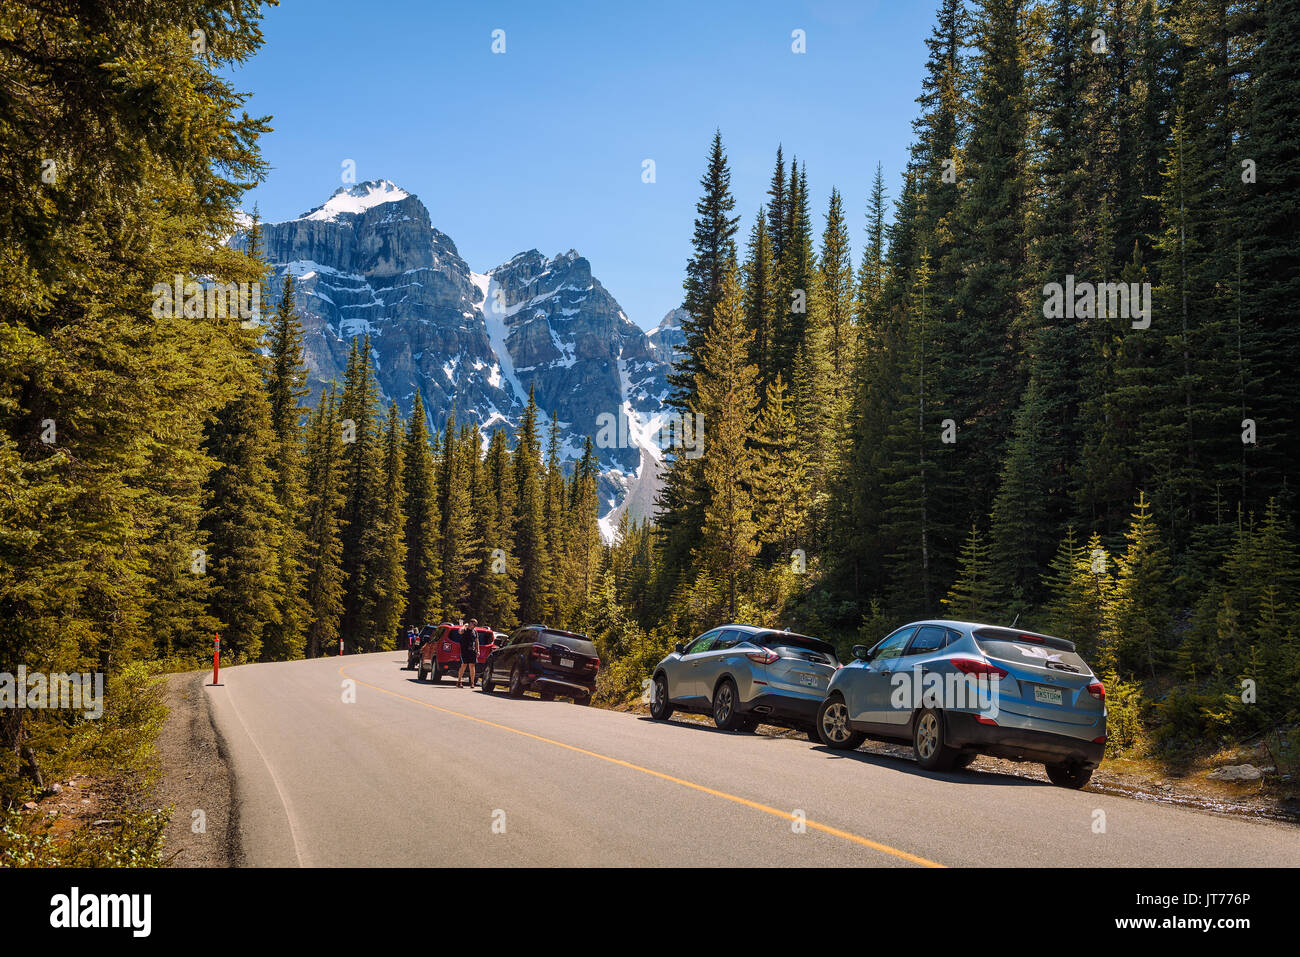 MORAINE LAKE, ALBERTA, CANADA - LE 27 JUIN 2017 : parc de voitures le long de la route pour le lac Moraine, dans le parc national Banff, Alberta, Canada, avec des pe Banque D'Images